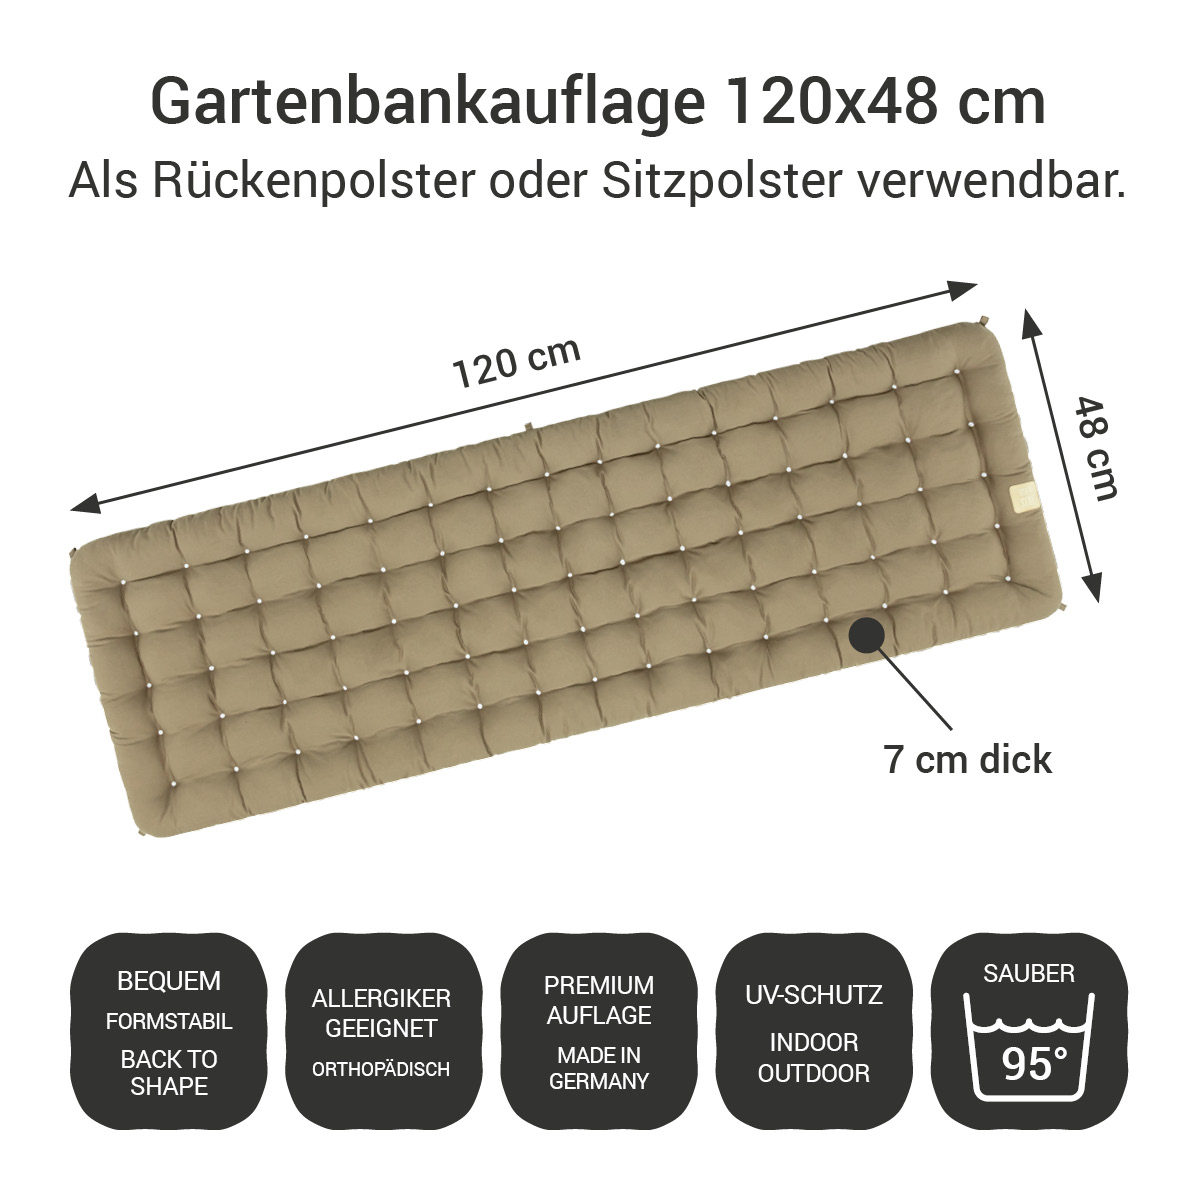 Gartenbank Auflage goldbraun 120x48 cm / 120 x 50 cm | bequem & orthopädisch, komplett im Ganzen waschbar bis 95°C, wetterfest, Made in Germany